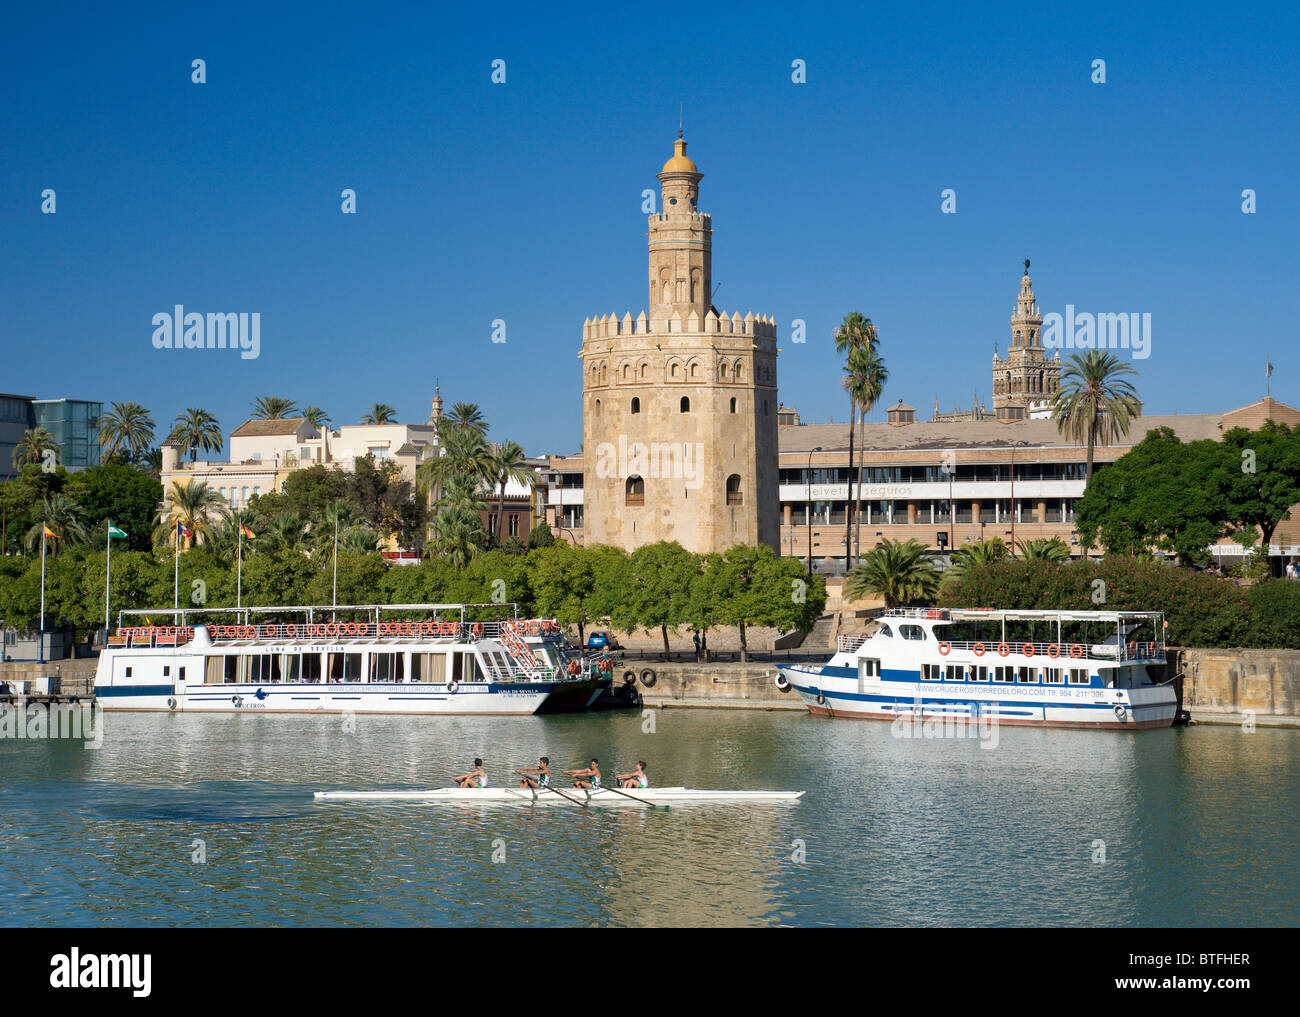 España, Sevilla, la Torre del Oro, la Torre del Oro, los barcos de crucero y una canoa en el río Guadalquivir Foto de stock